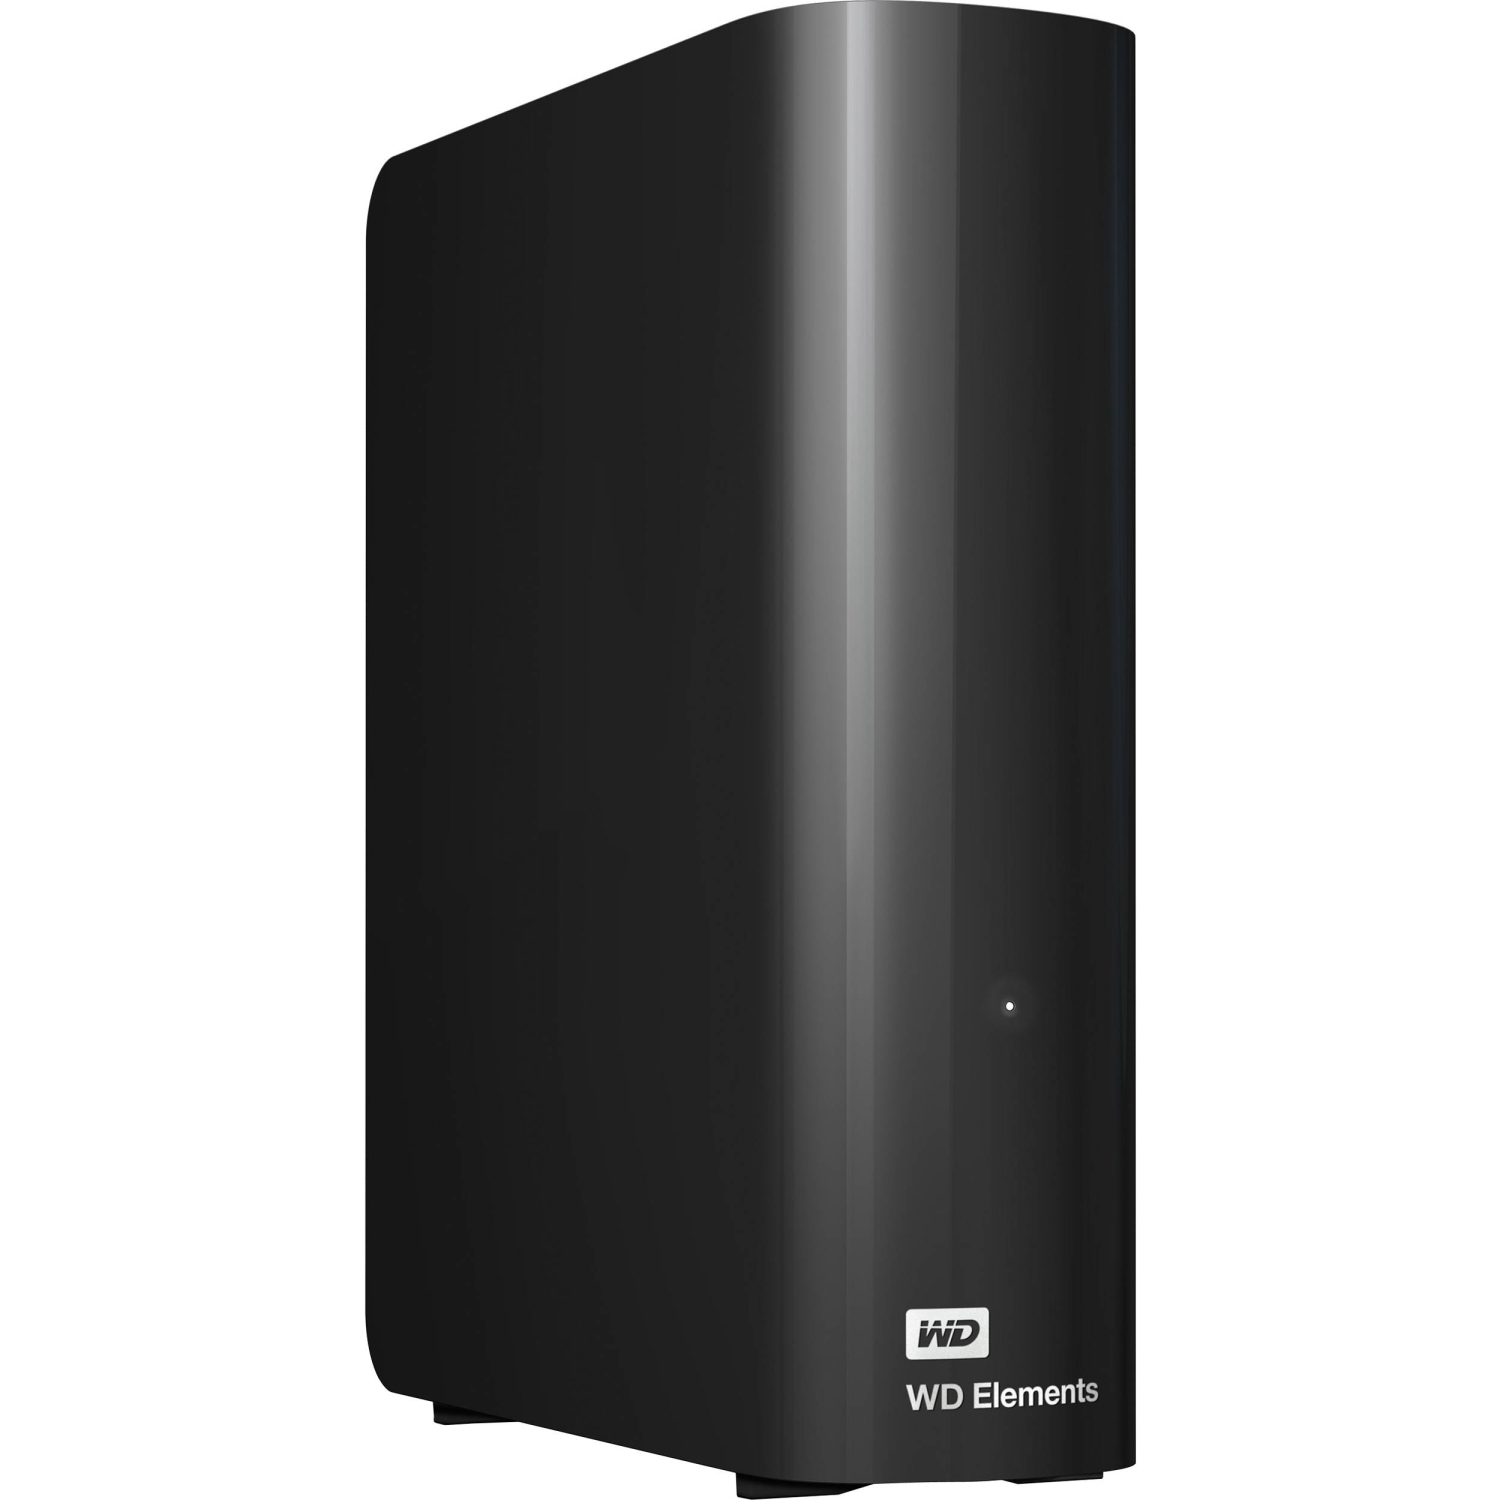 Western Digital 4TB Desktop Storage (WDBWLG0040HBK-NESN)